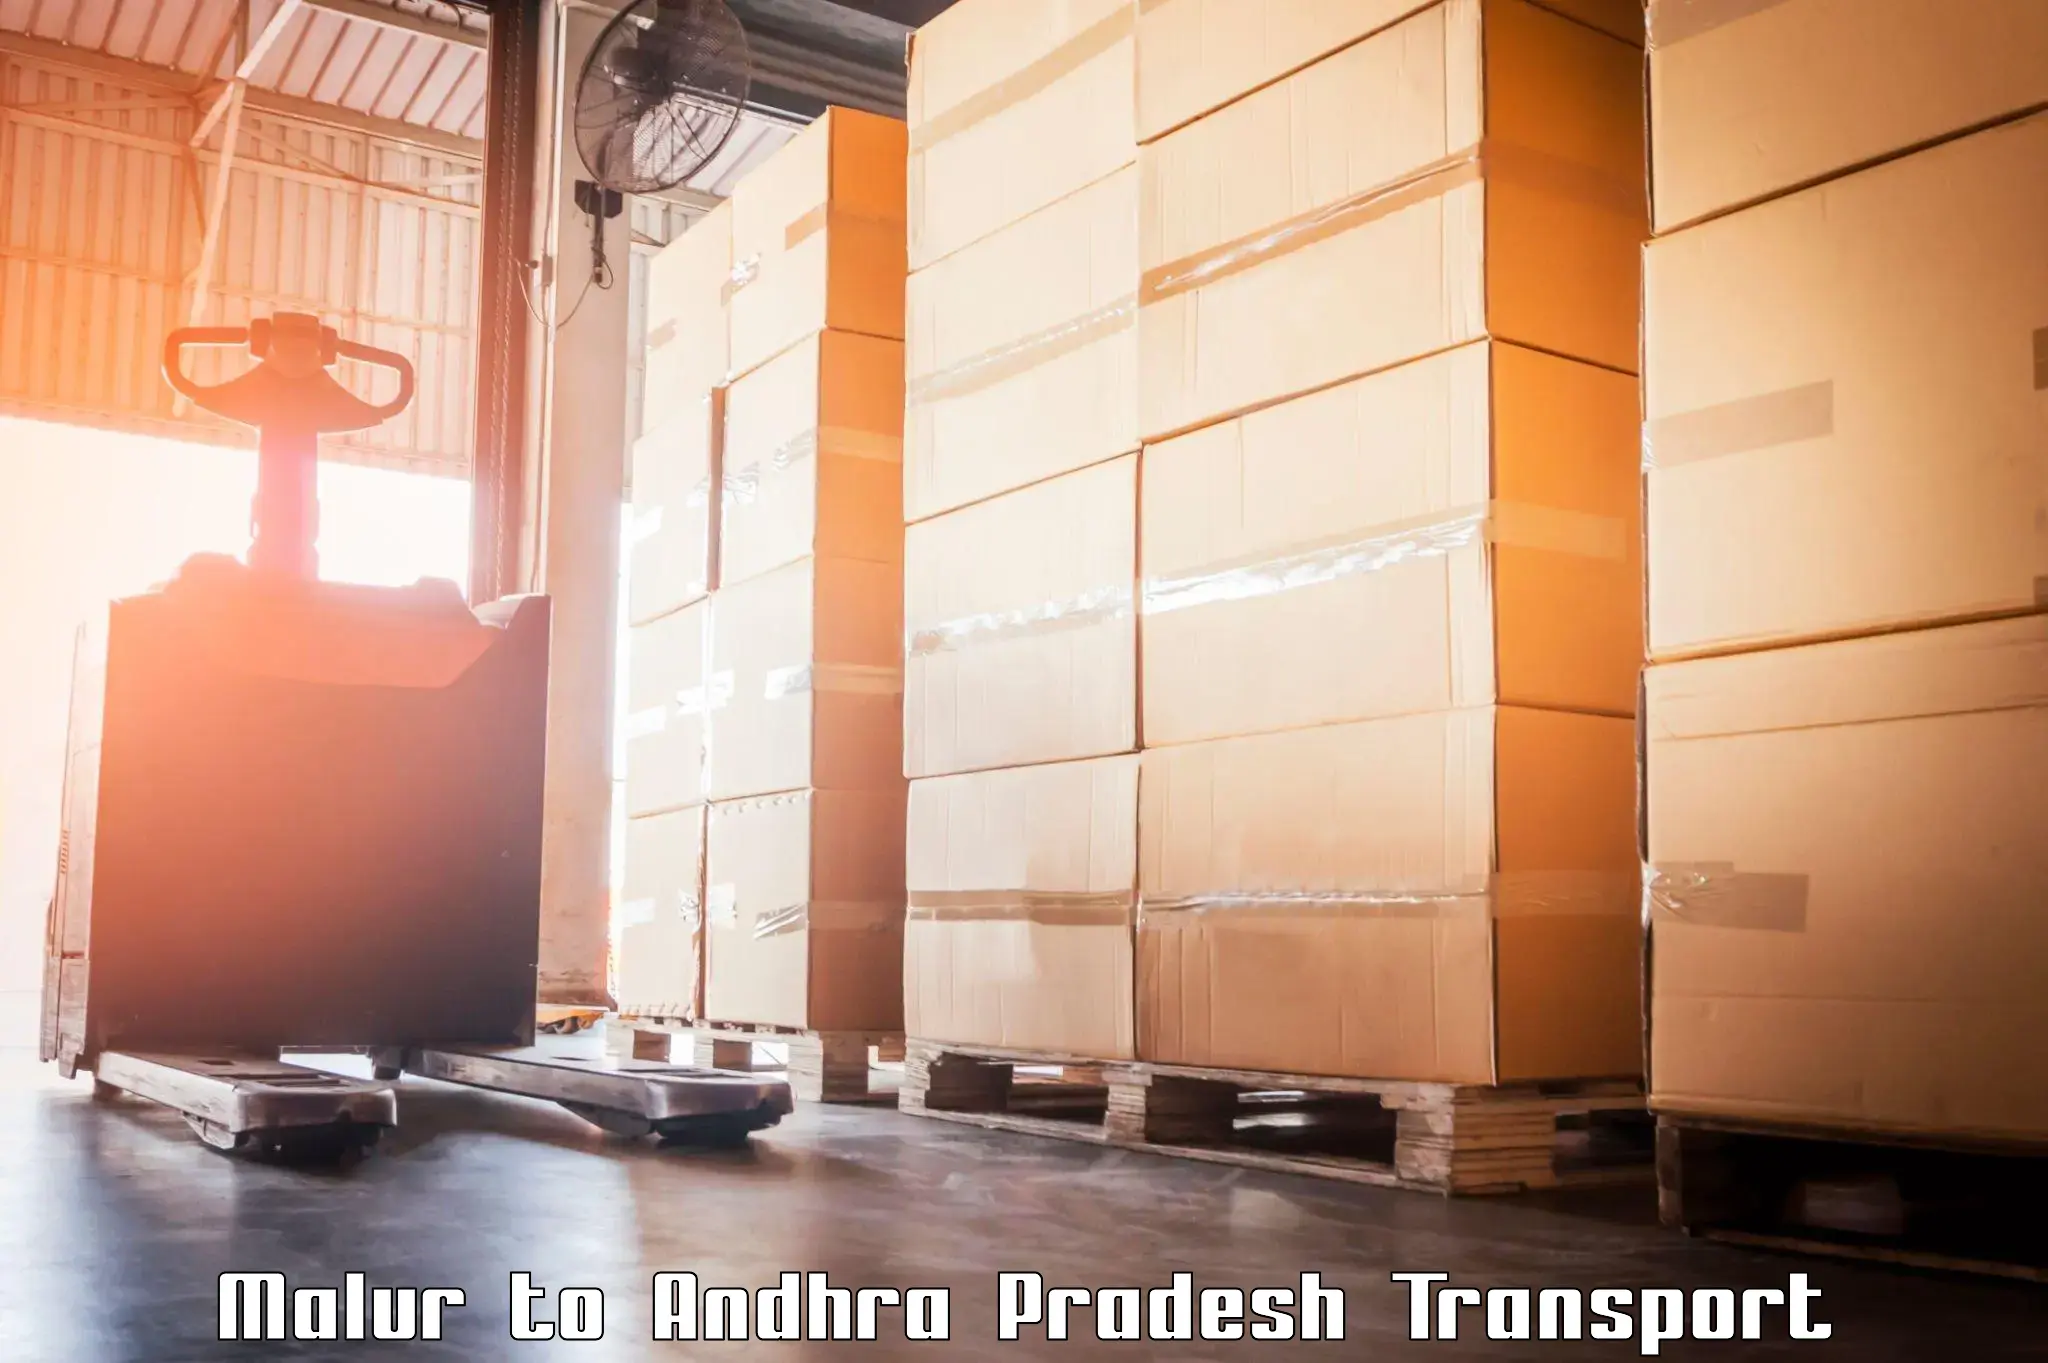 Furniture transport service in Malur to Andhra Pradesh